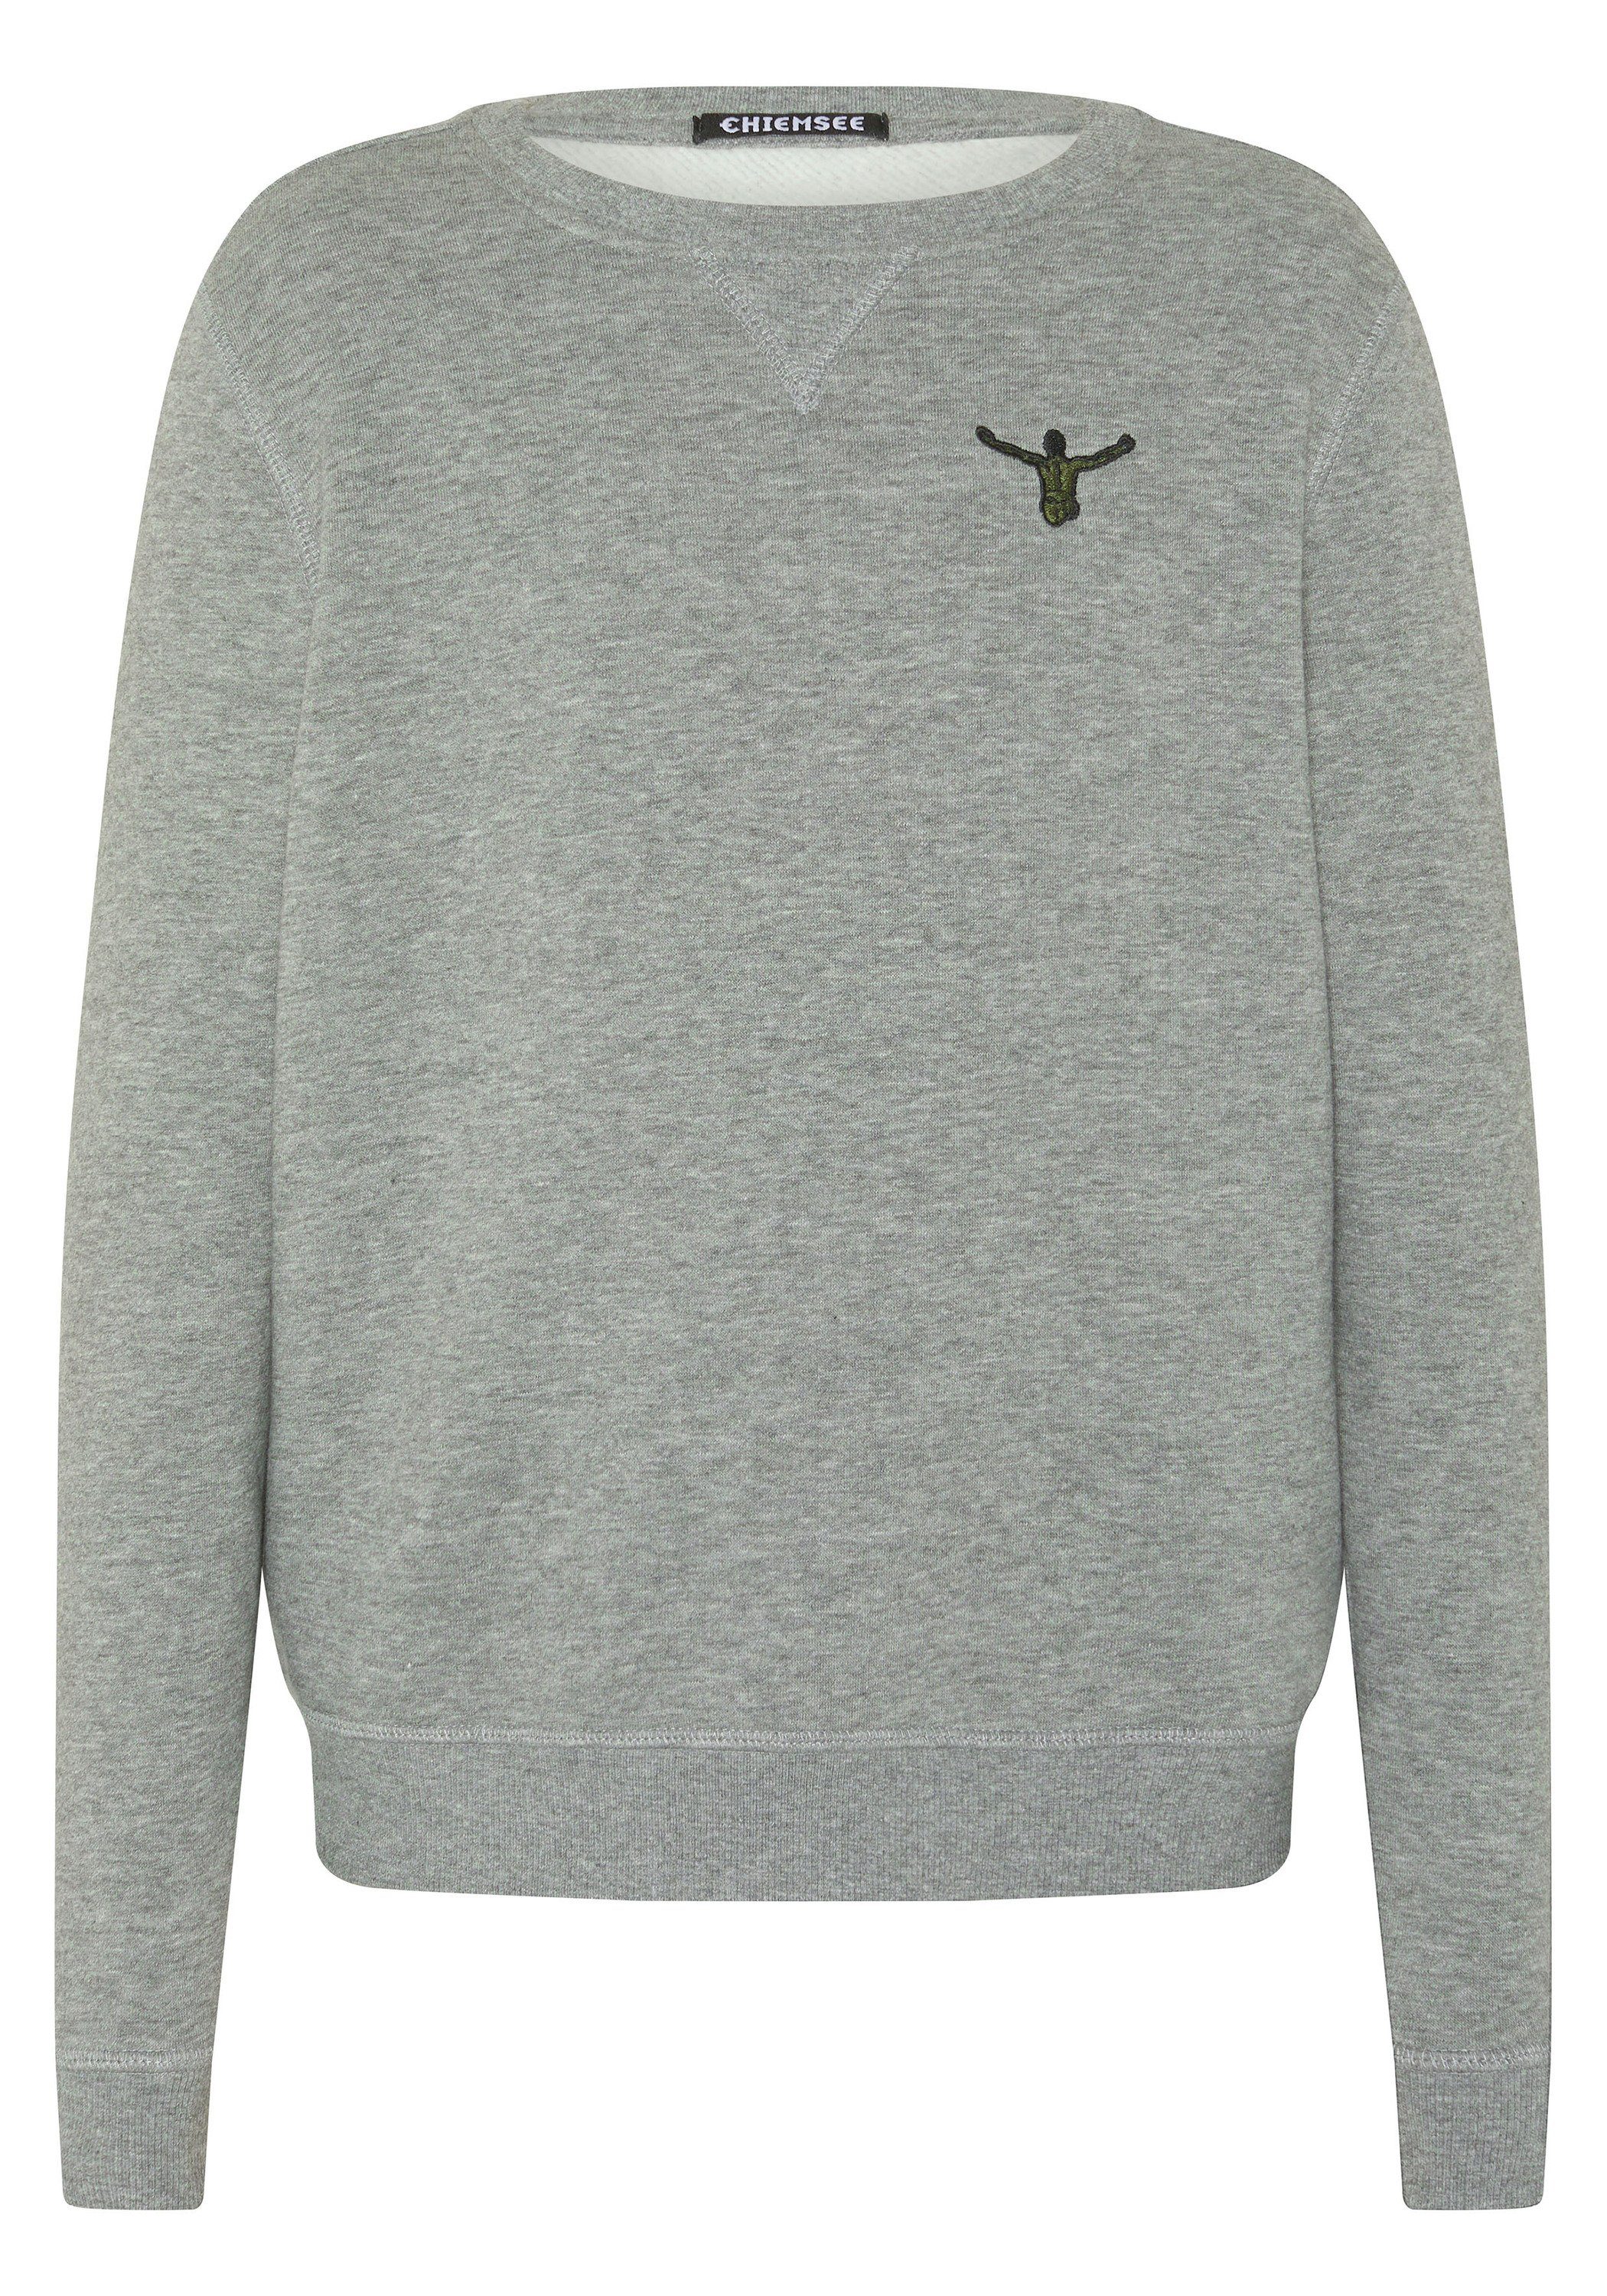 Chiemsee Sweatshirt Sweater mit Jumper-Print 1 17-4402M Neutral Gray Melange